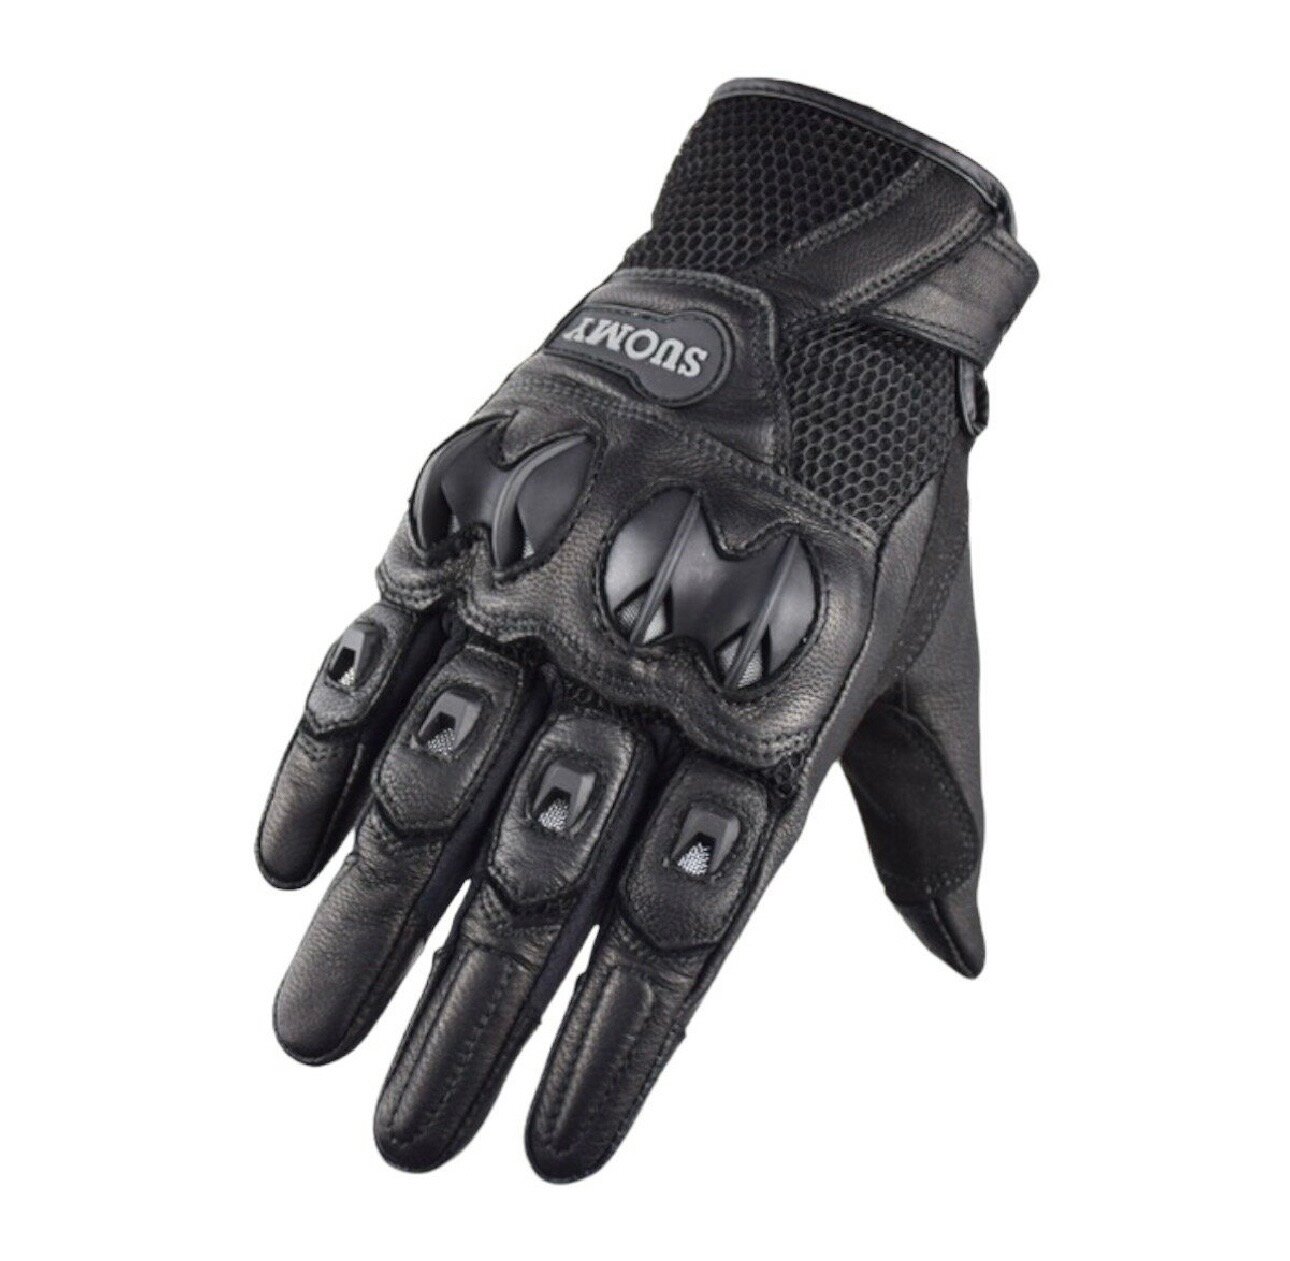 Мотоперчатки перчатки кожаные Suomy SU-15 для мотоциклиста на мотоцикл скутер мопед квадроцикл черно-коричневые M